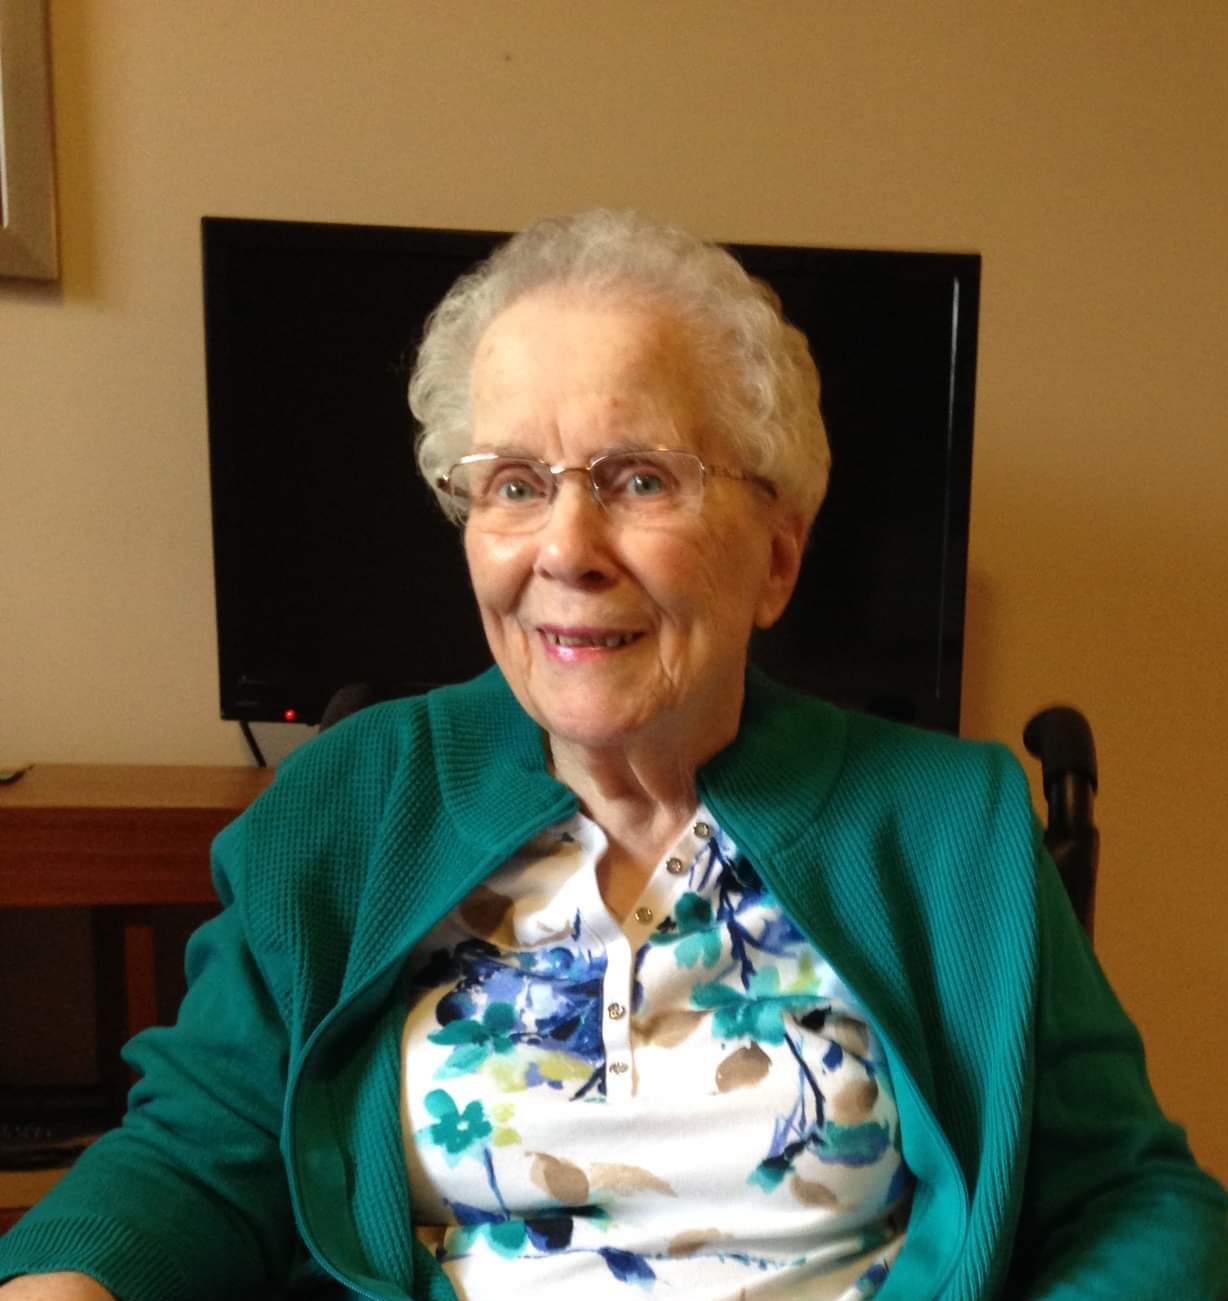 Online Tribute for Kathleen Langlois | Nunes Pottinger Funeral Service ...